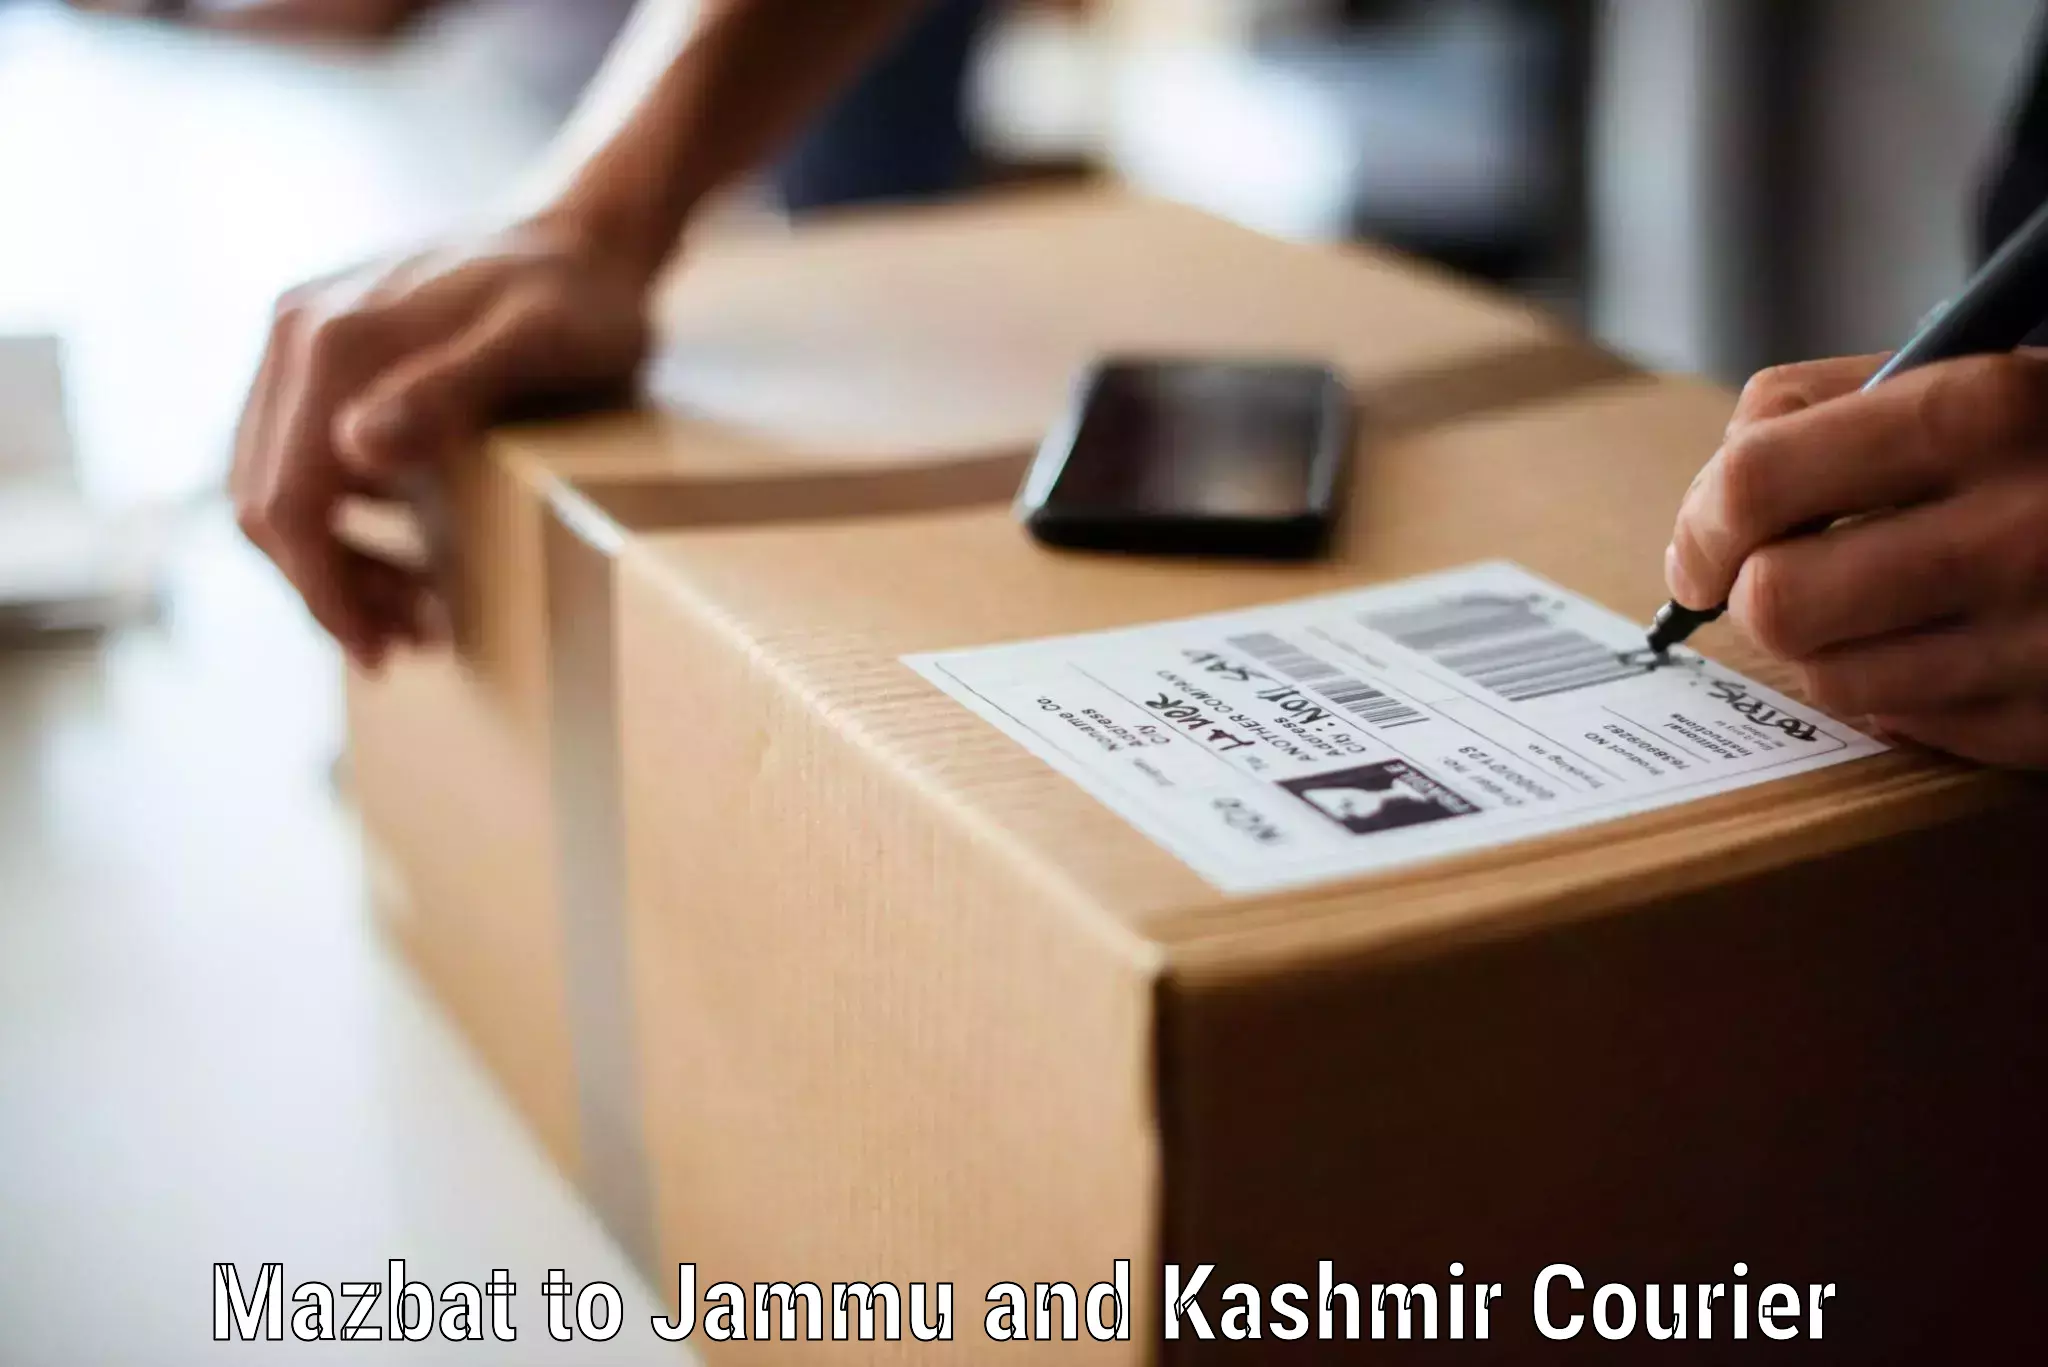 Furniture moving experts Mazbat to IIT Jammu